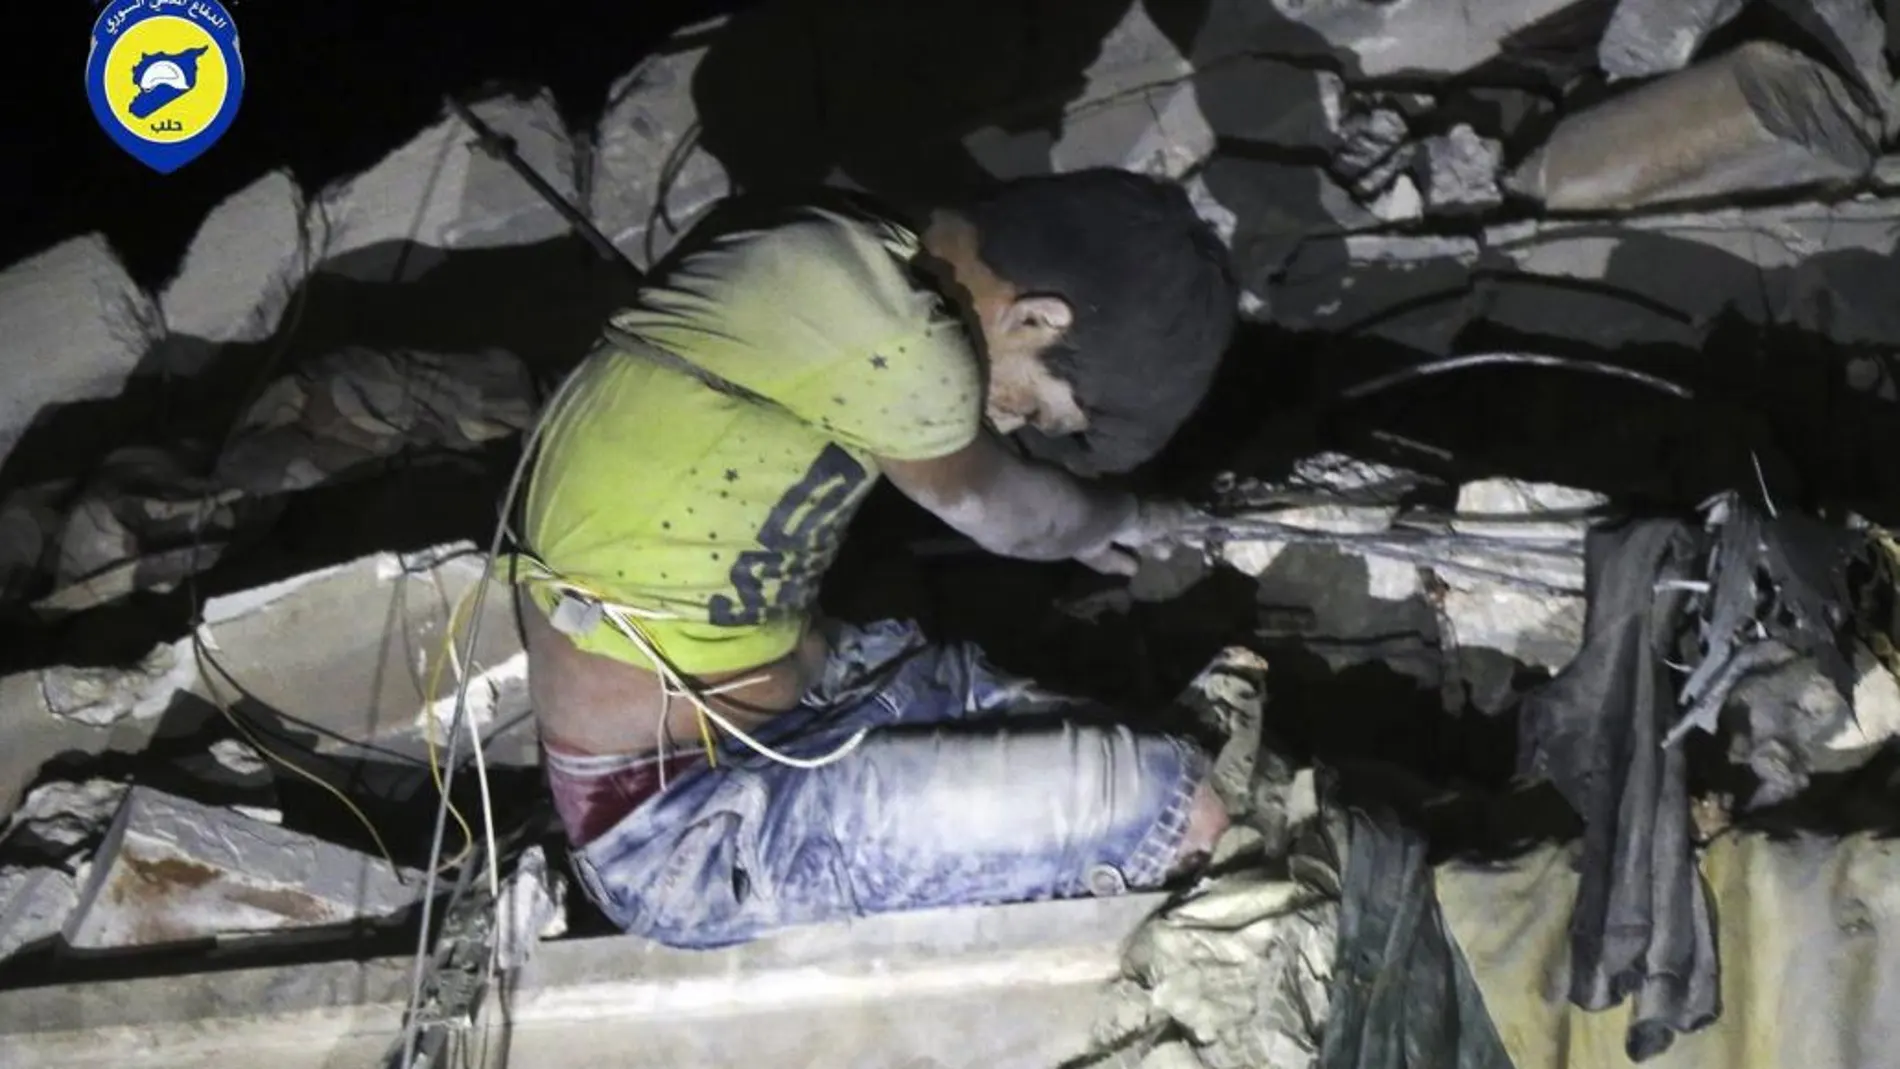 Imagen del rescate de víctimas tras un bombardeo en un barrio próximo a Alepo.